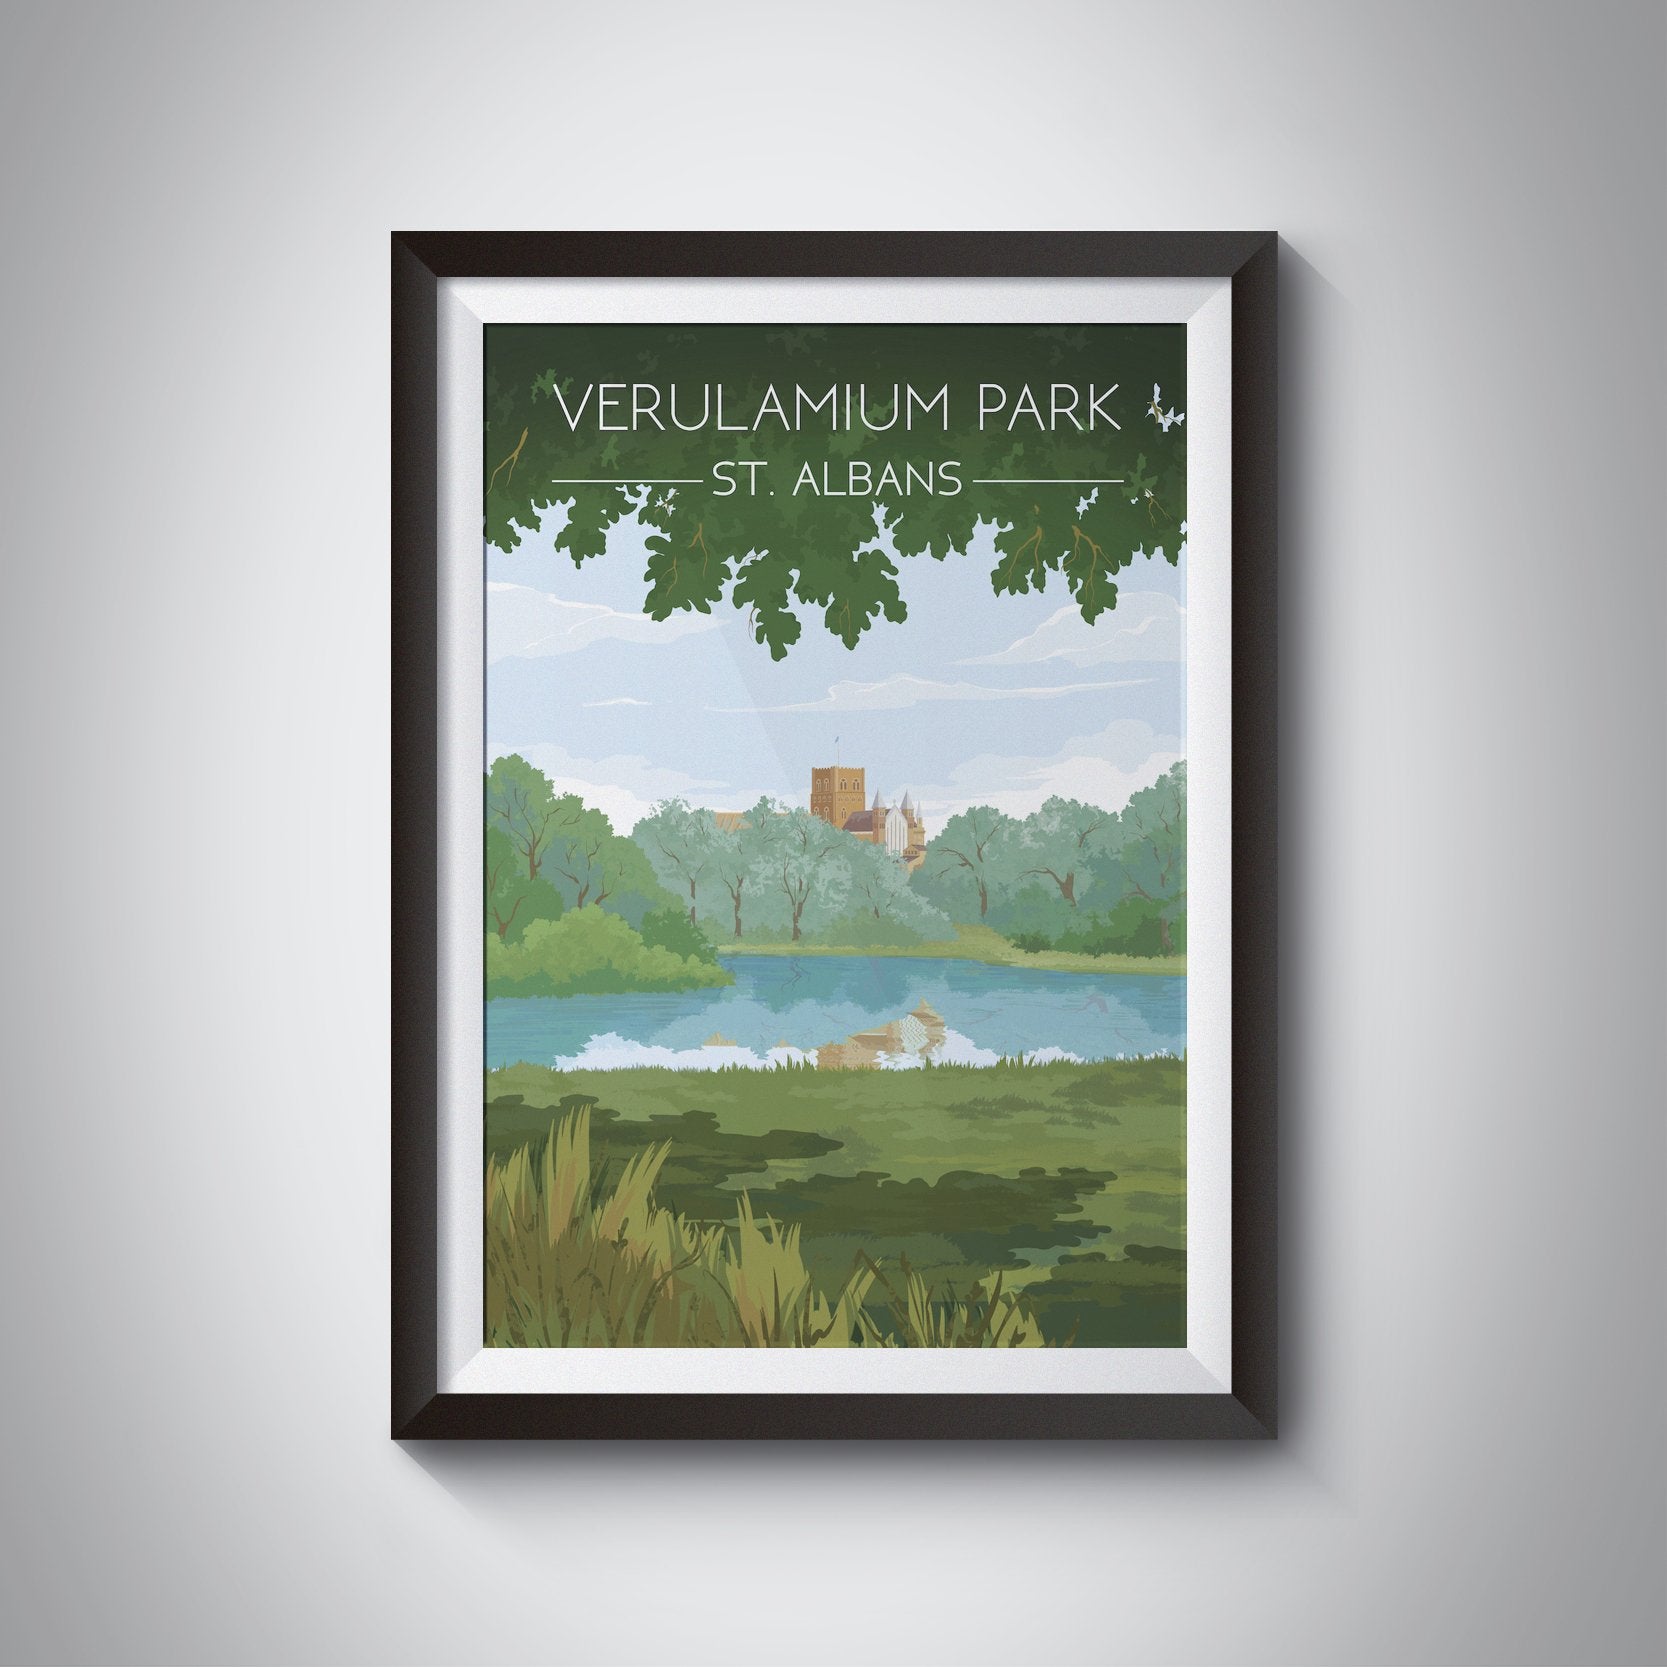 Verulamium Park Travel Poster